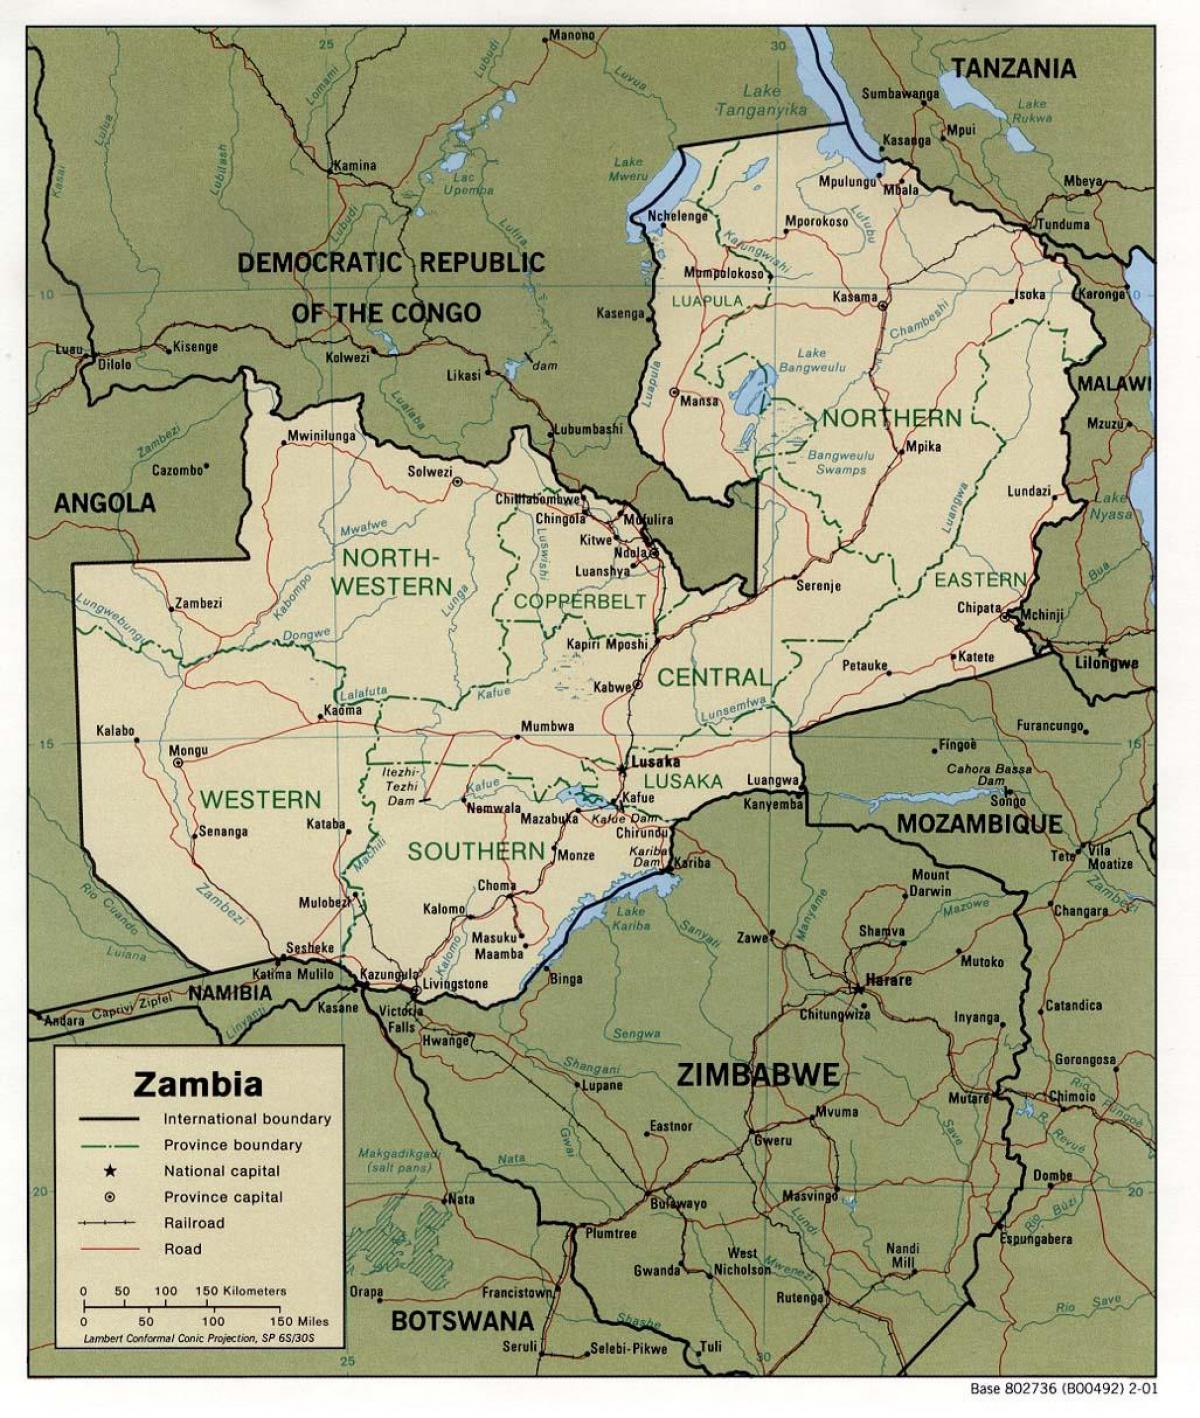 ઝામ્બિયા ભૌતિક સુવિધાઓ નકશો